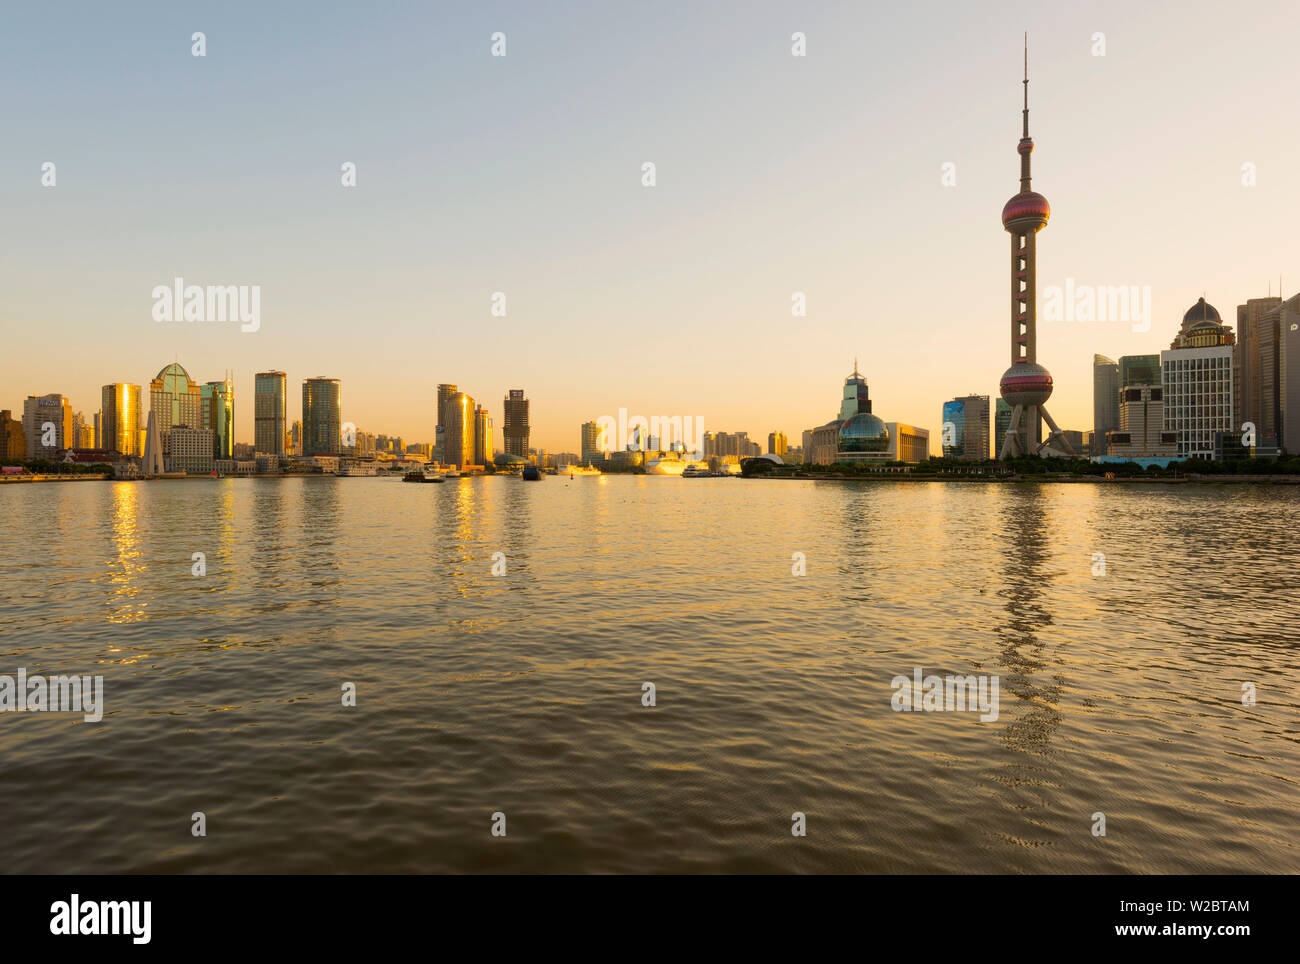 La Chine, Shanghai, Pudong District Skyline, du quartier financier, à travers la rivière Huangpu au lever du soleil Banque D'Images